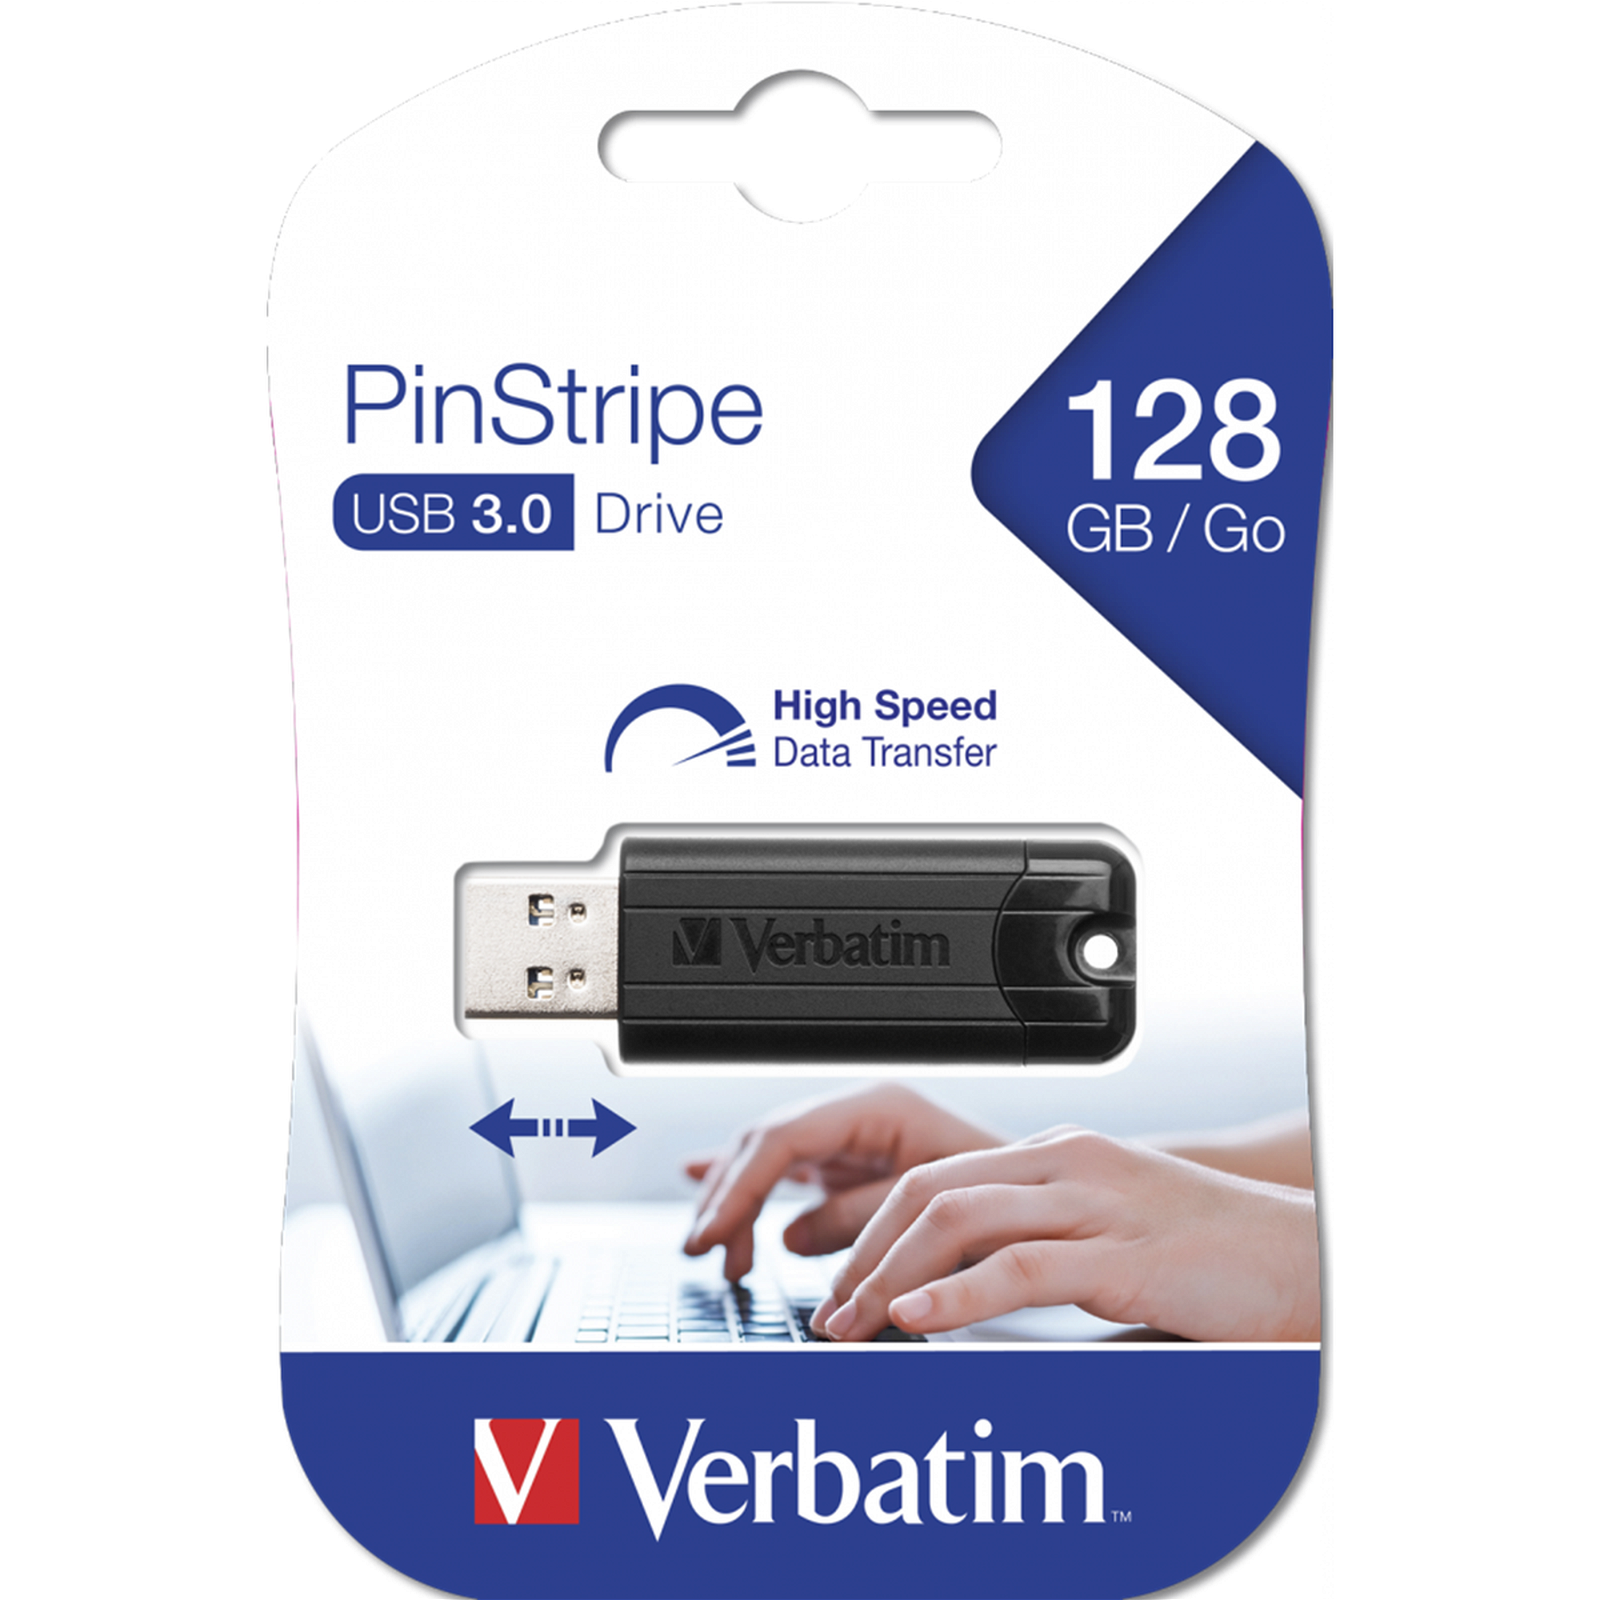 USB Stick Verbatim PinStripe USB 3.0 128GB Sort